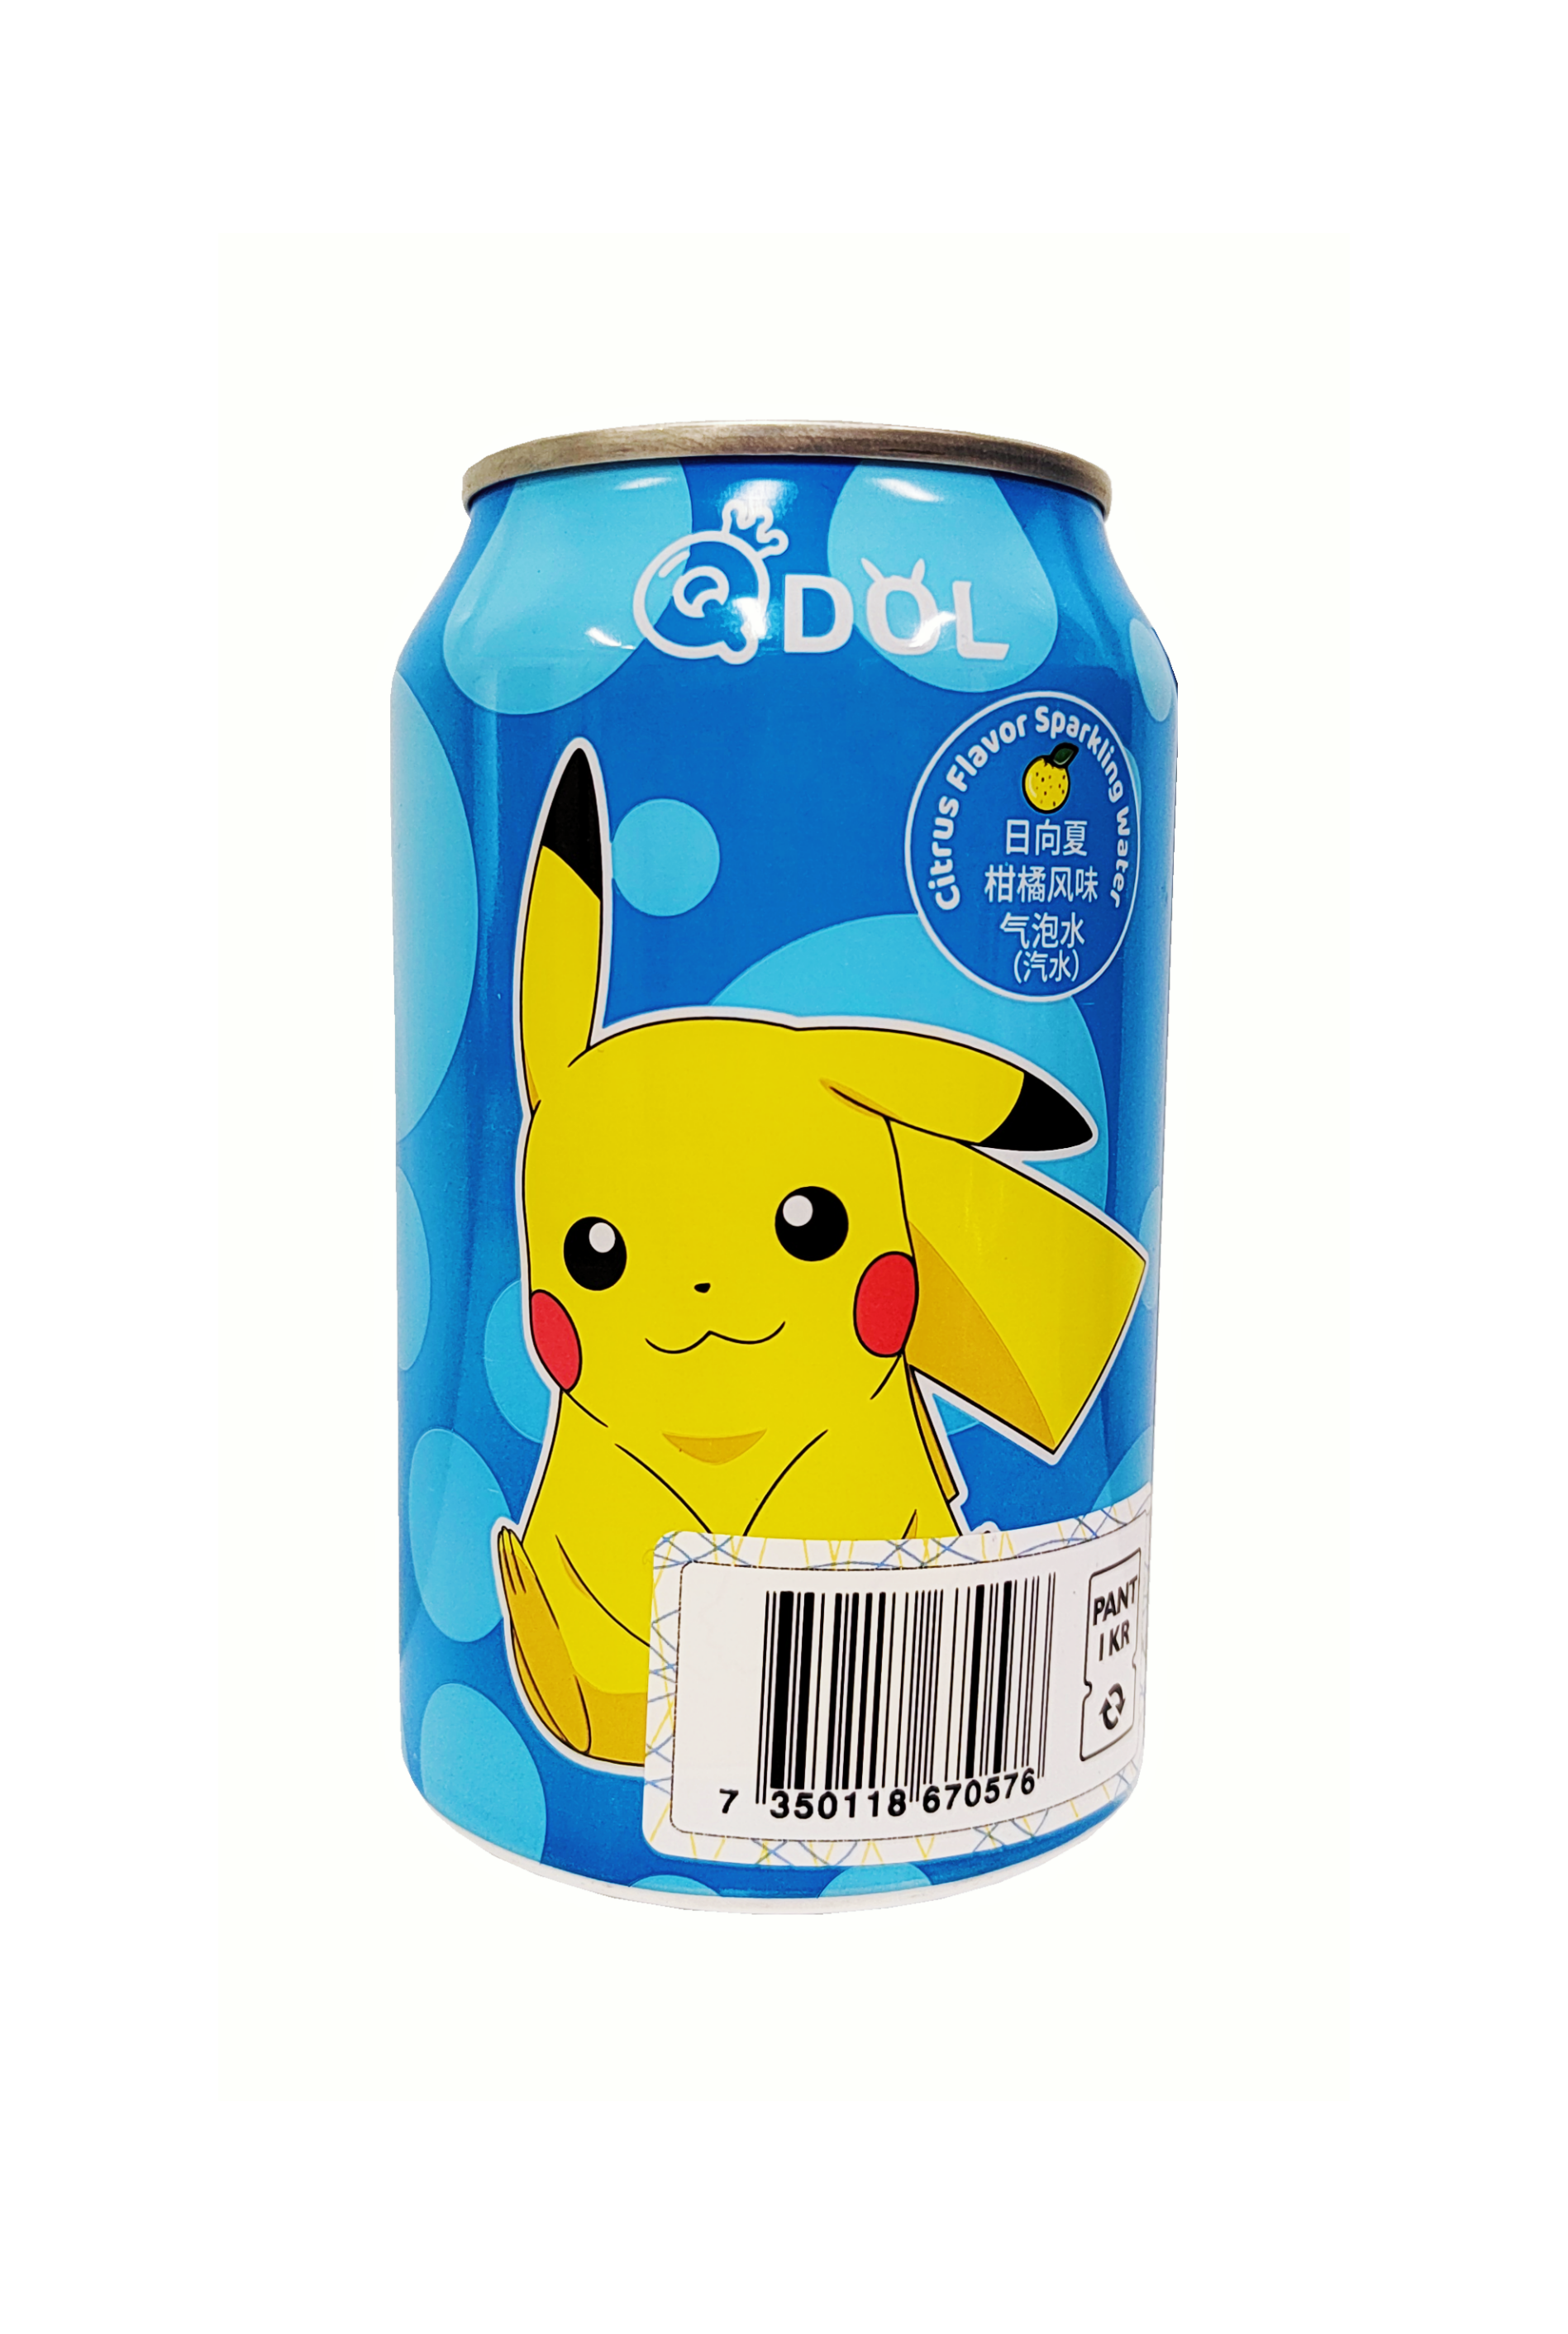 Soda Tangerine Smak 330ml QDOL Pokemon 330ml Kina